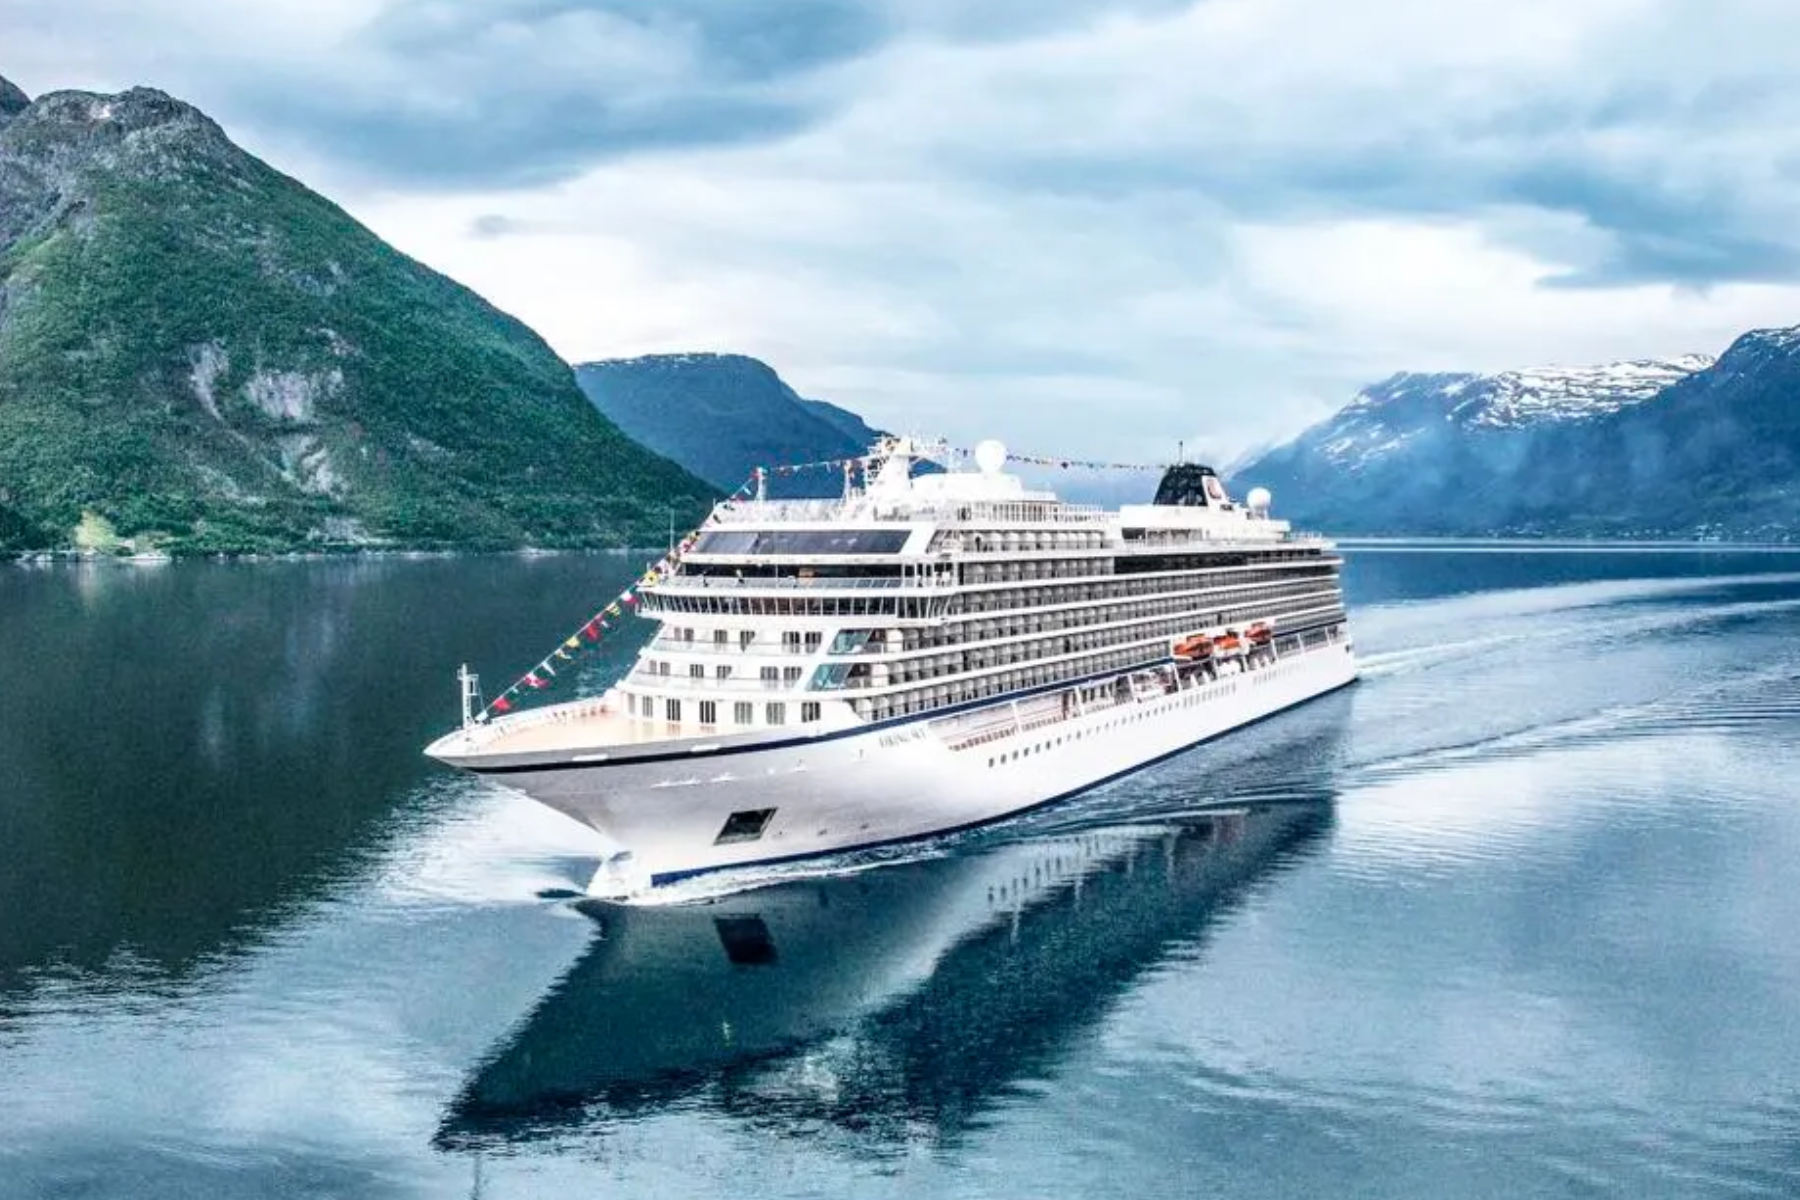 Viking ocean ship in Eidfjord Norway